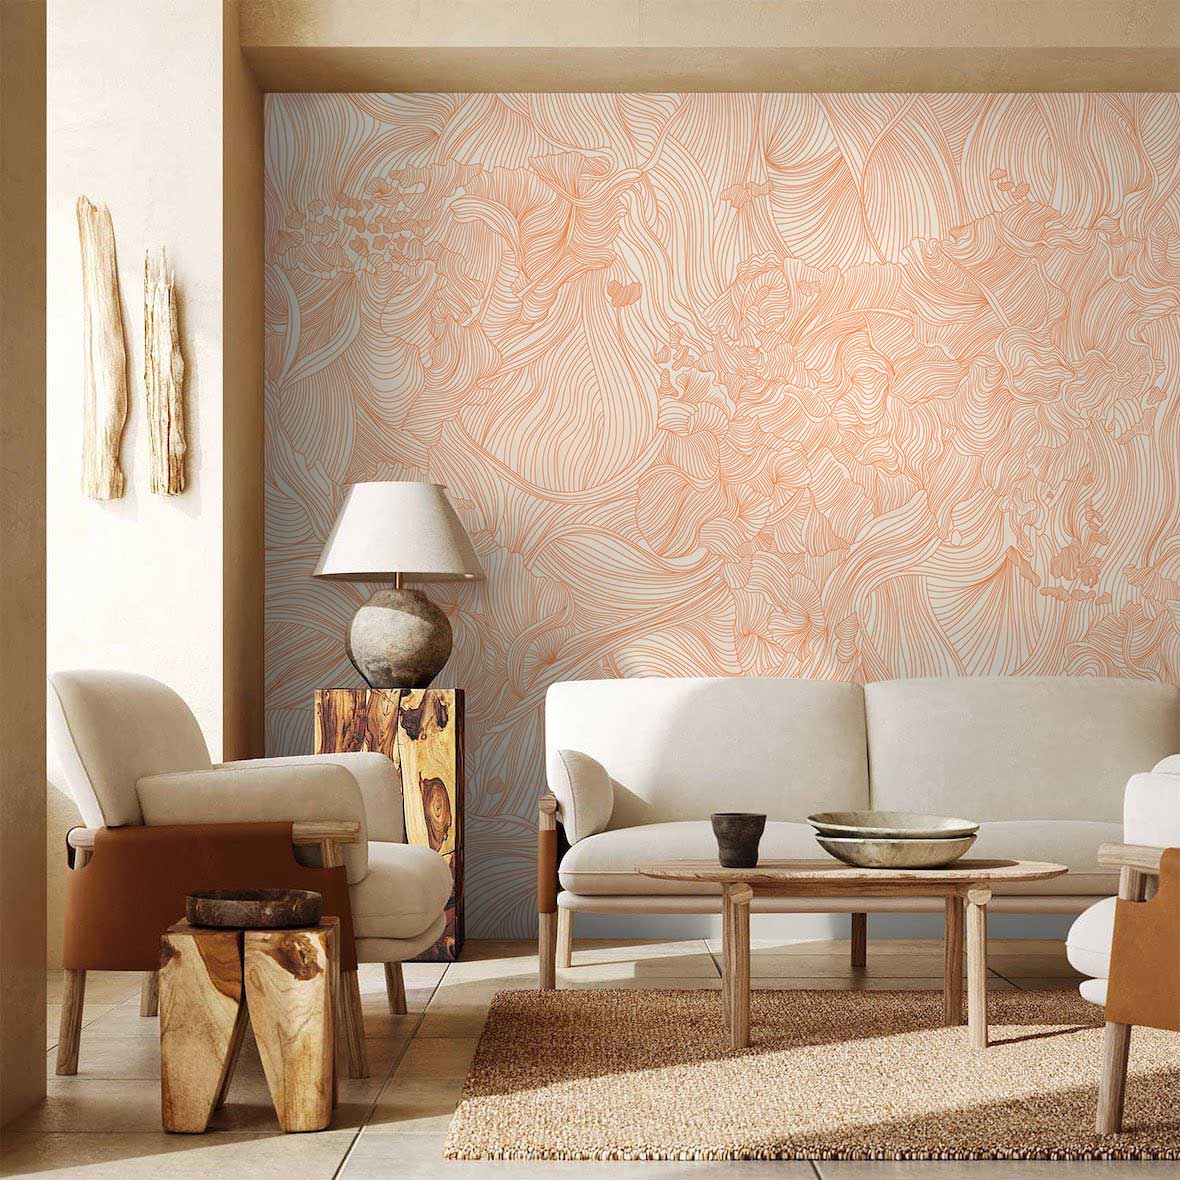 Crossing Lines Flower Wallpaper Mural for living Room decor